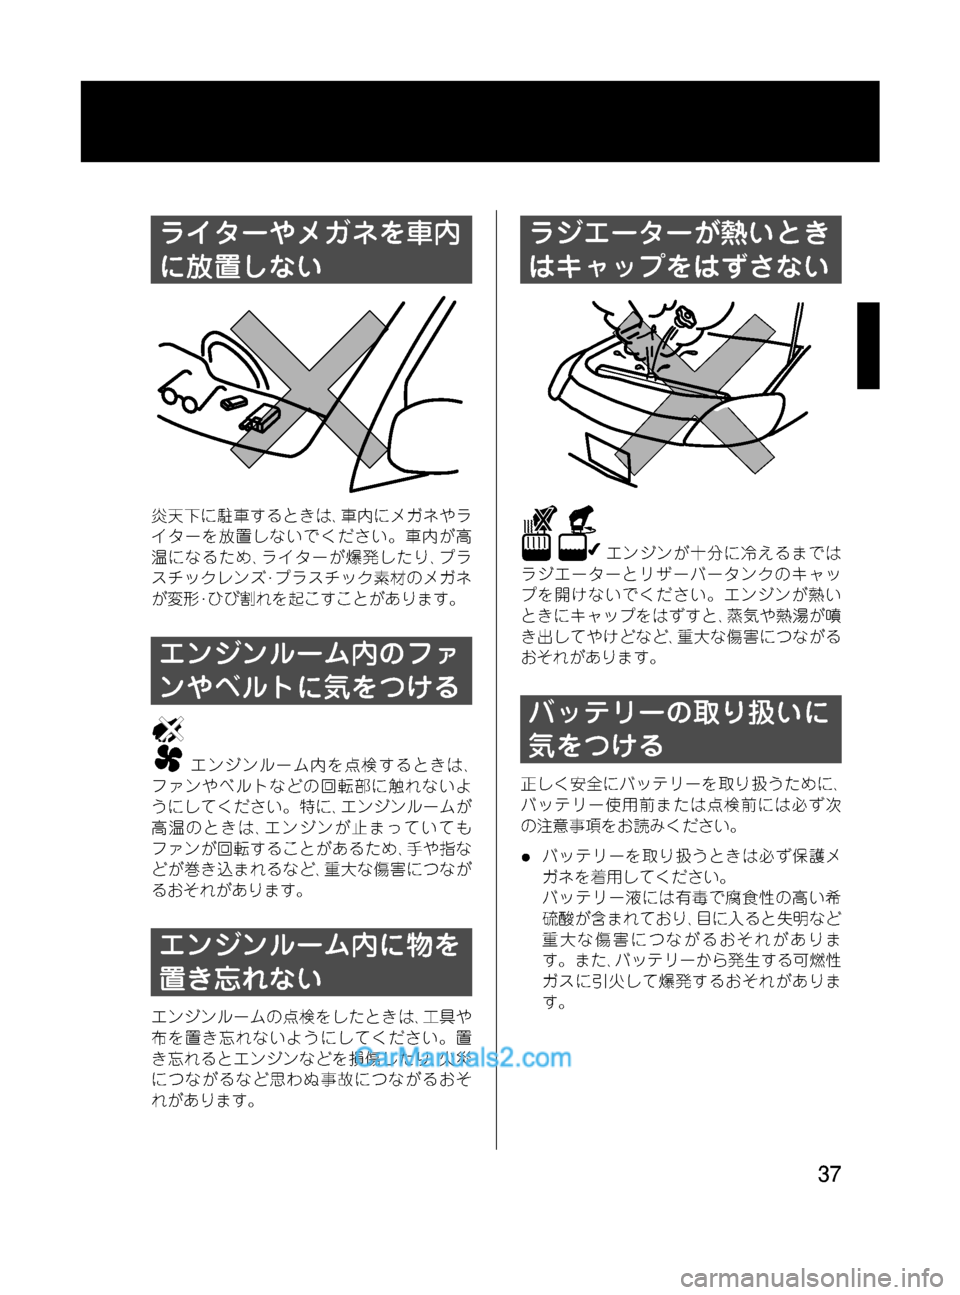 MAZDA MODEL VERISA 2007  ベリーサ｜取扱説明書 (in Japanese) Black plate (37,1)
ライターやメガネを車内
に放置しない
炎天下に駐車するときは､車内にメガネやラ
イターを放置しないでください。車内が高
温にな